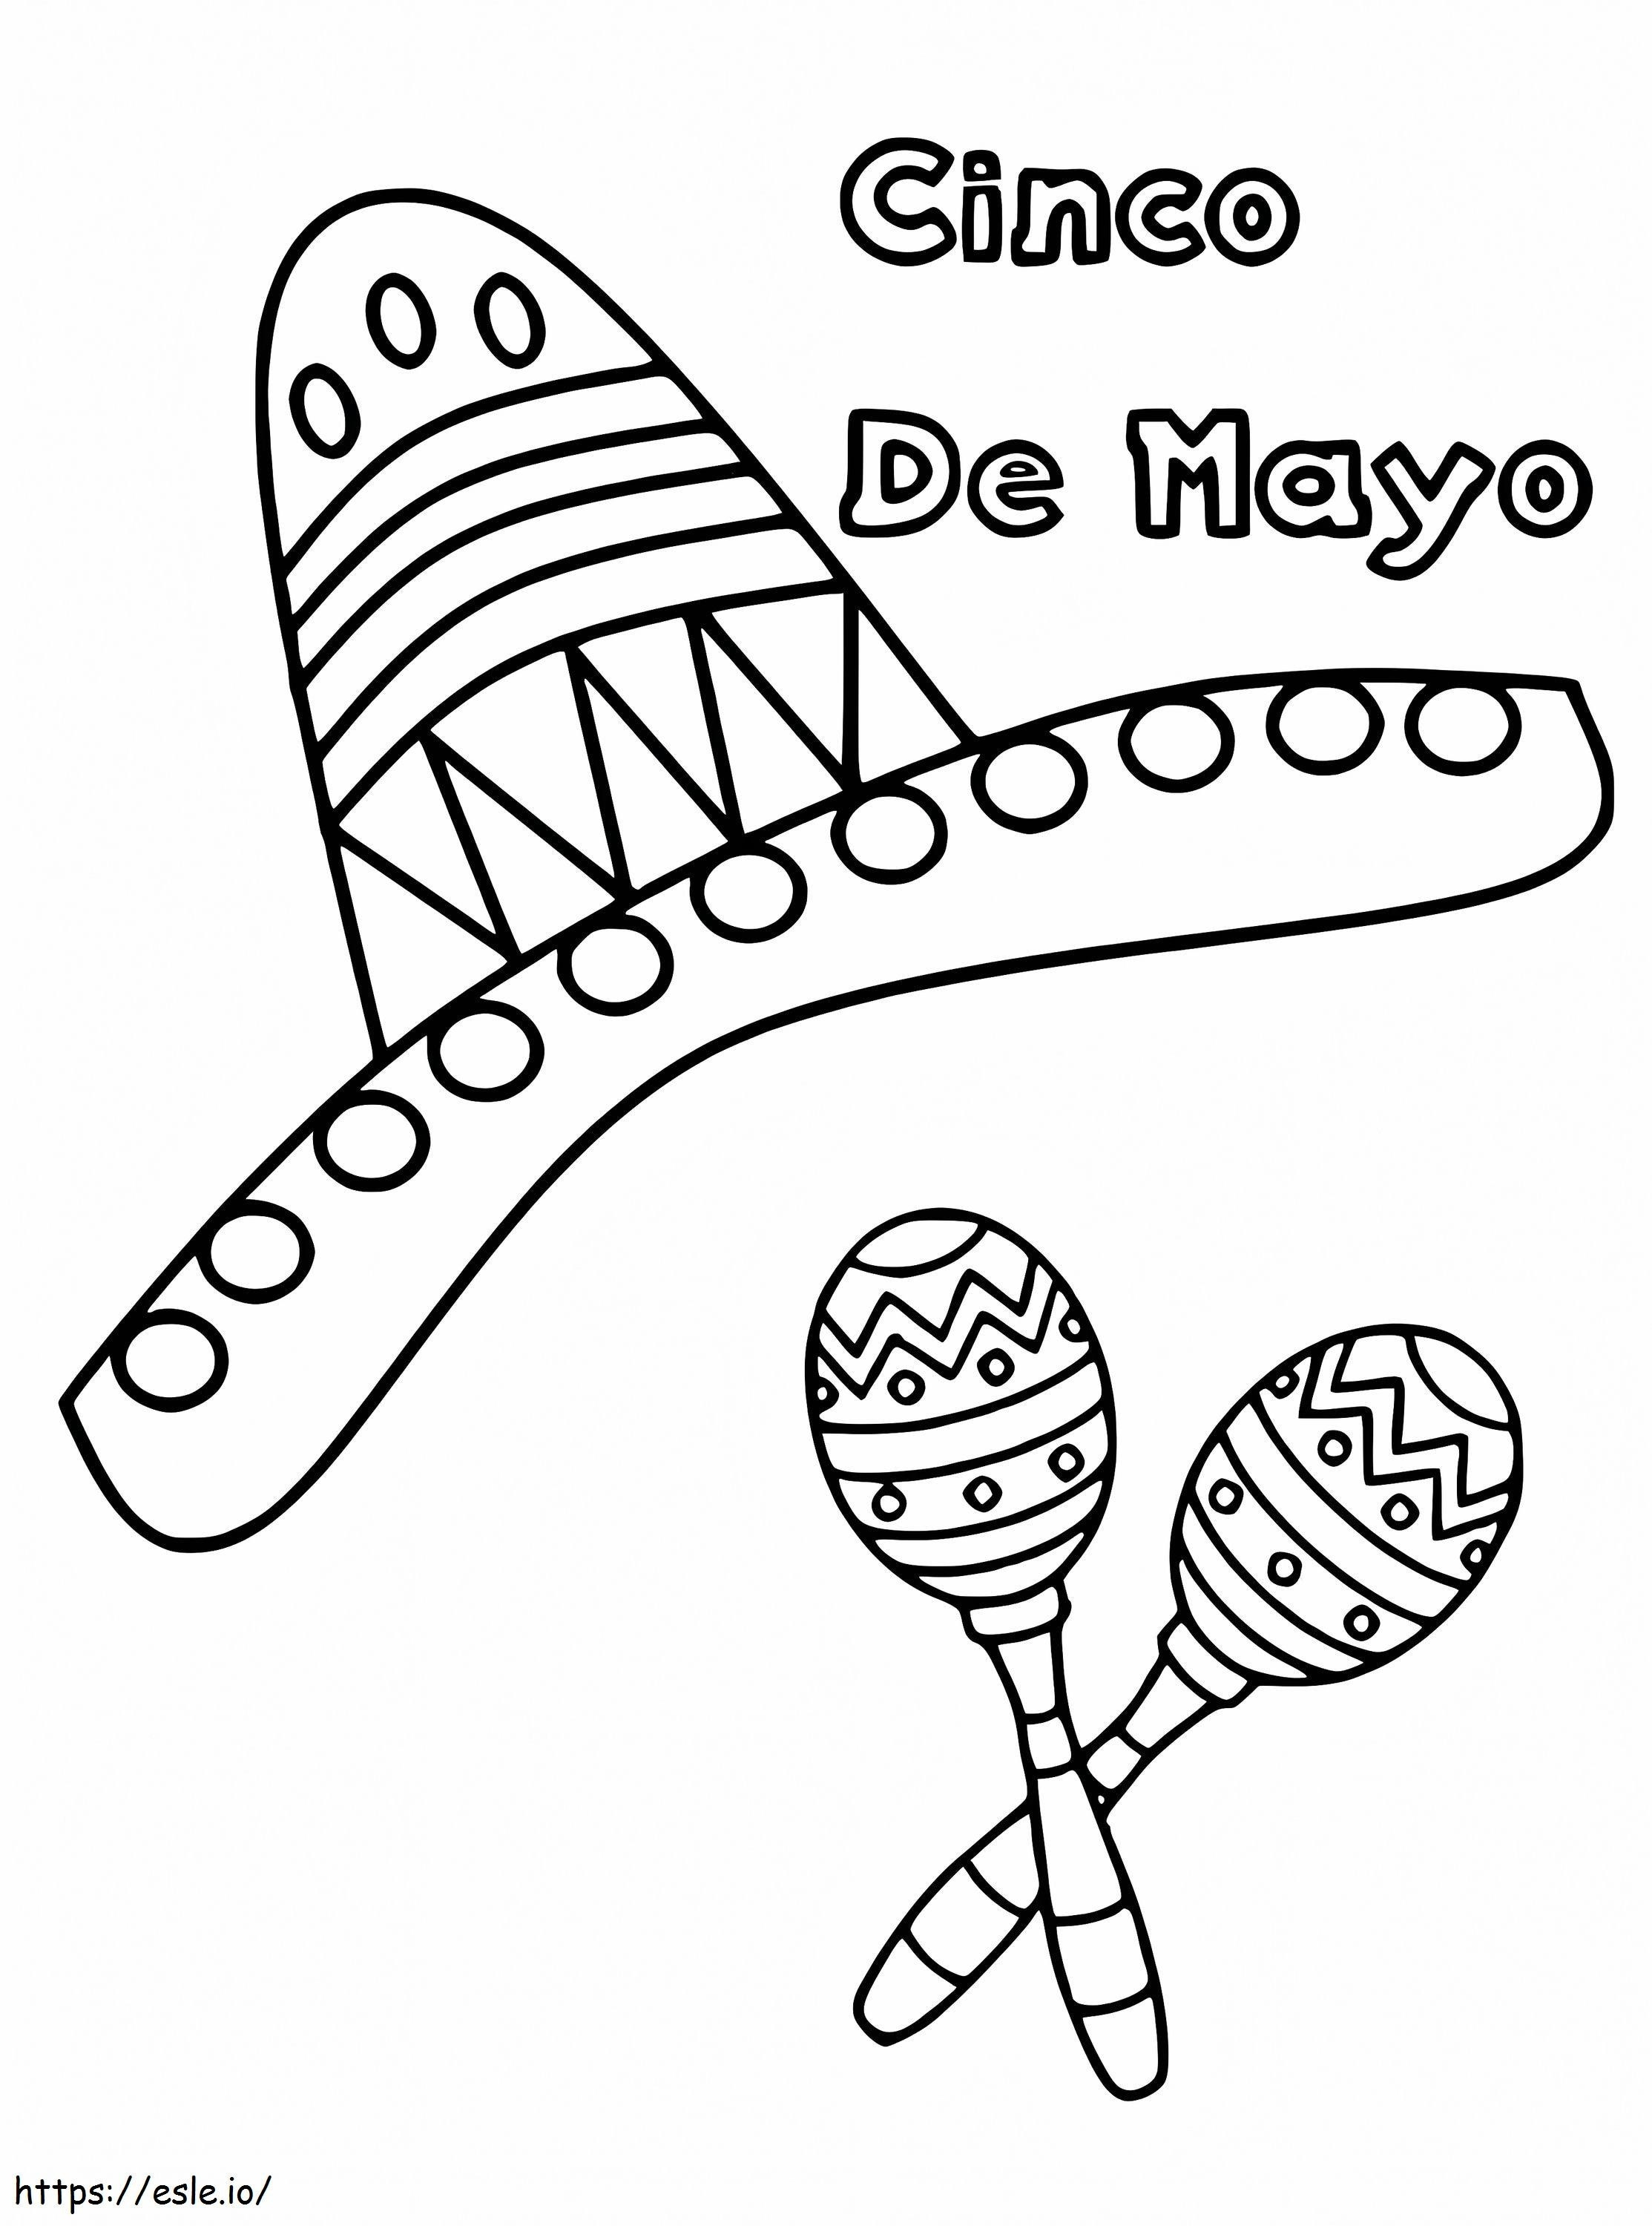 Cinco De Mayo Sombrero 1 coloring page